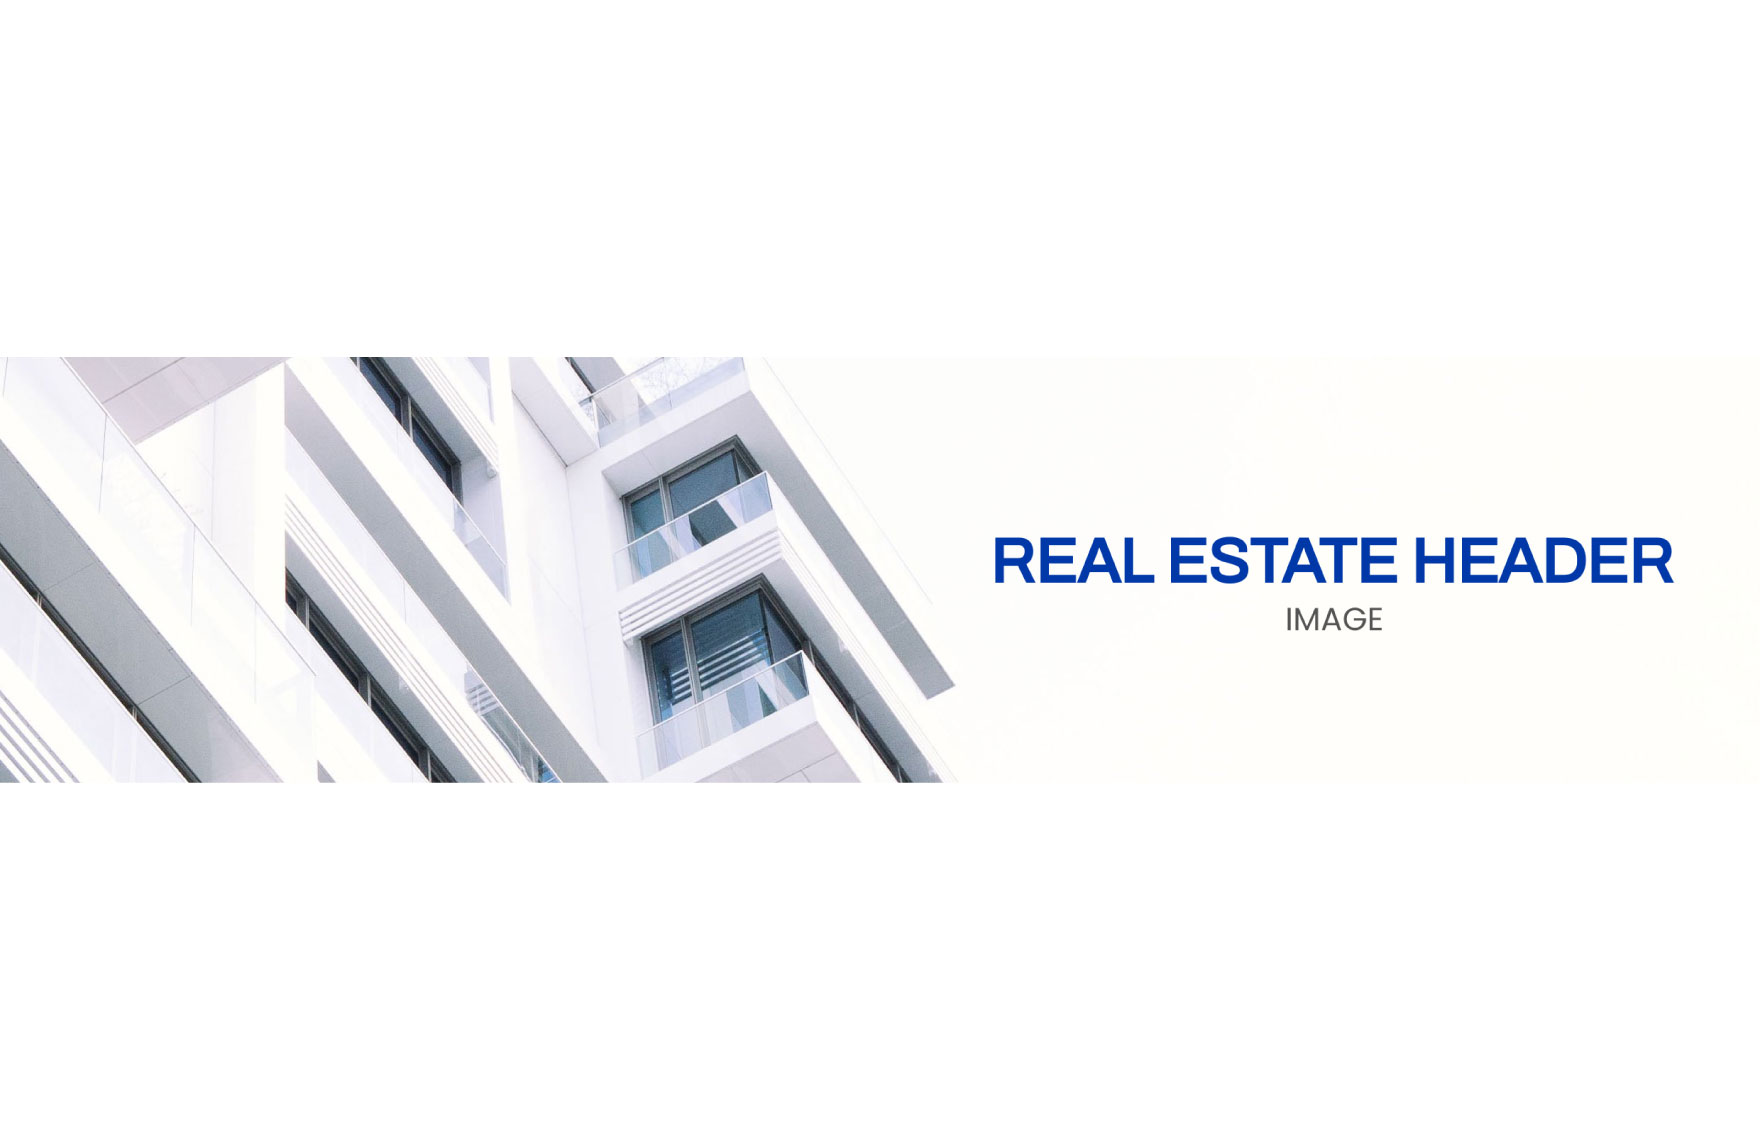 Real Estate Header Image 